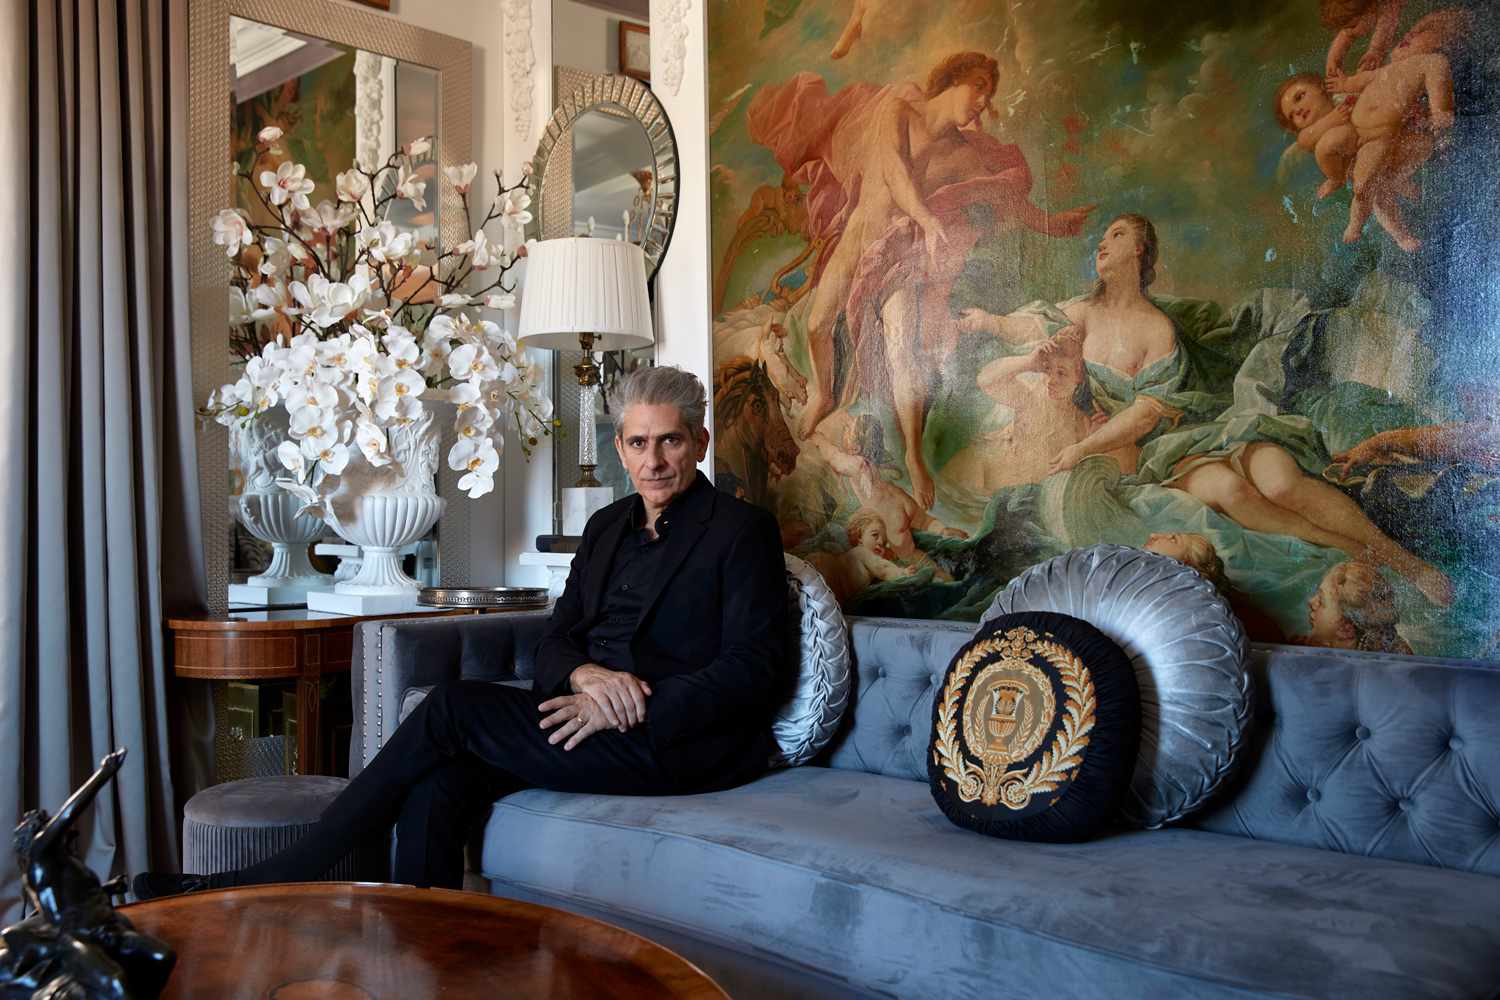 La casa neoyorquina 'de otro mundo' de Michael Imperioli parece pertenecer a 'The White Lotus' - Mira el interior